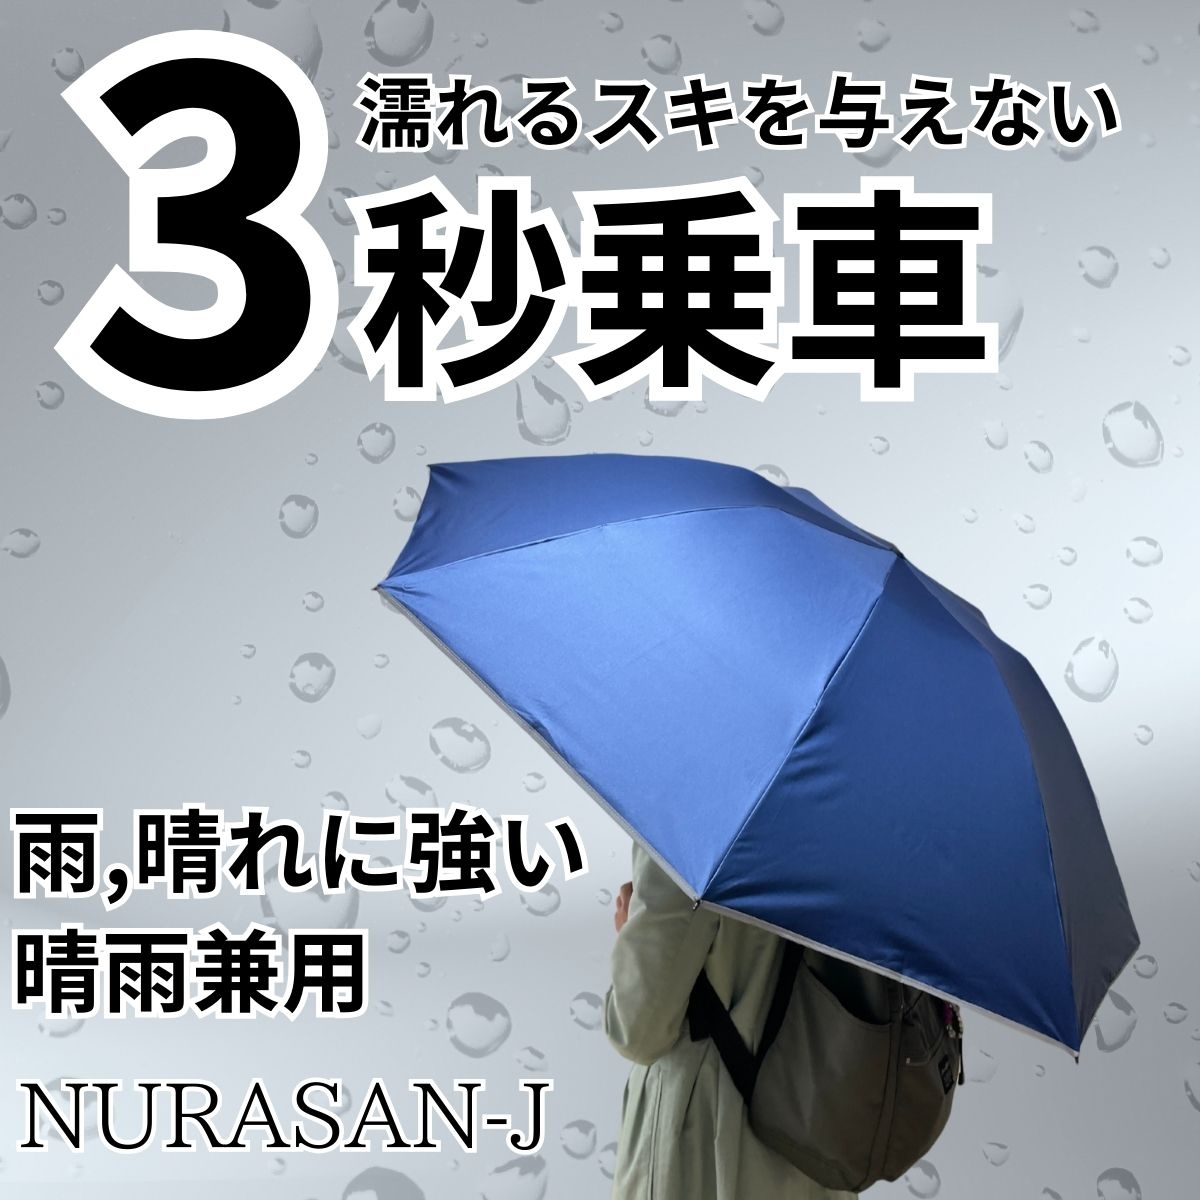 3秒乗車。だれも濡らさない晴雨兼用傘「NURASAN-J」 | Giftpad egift